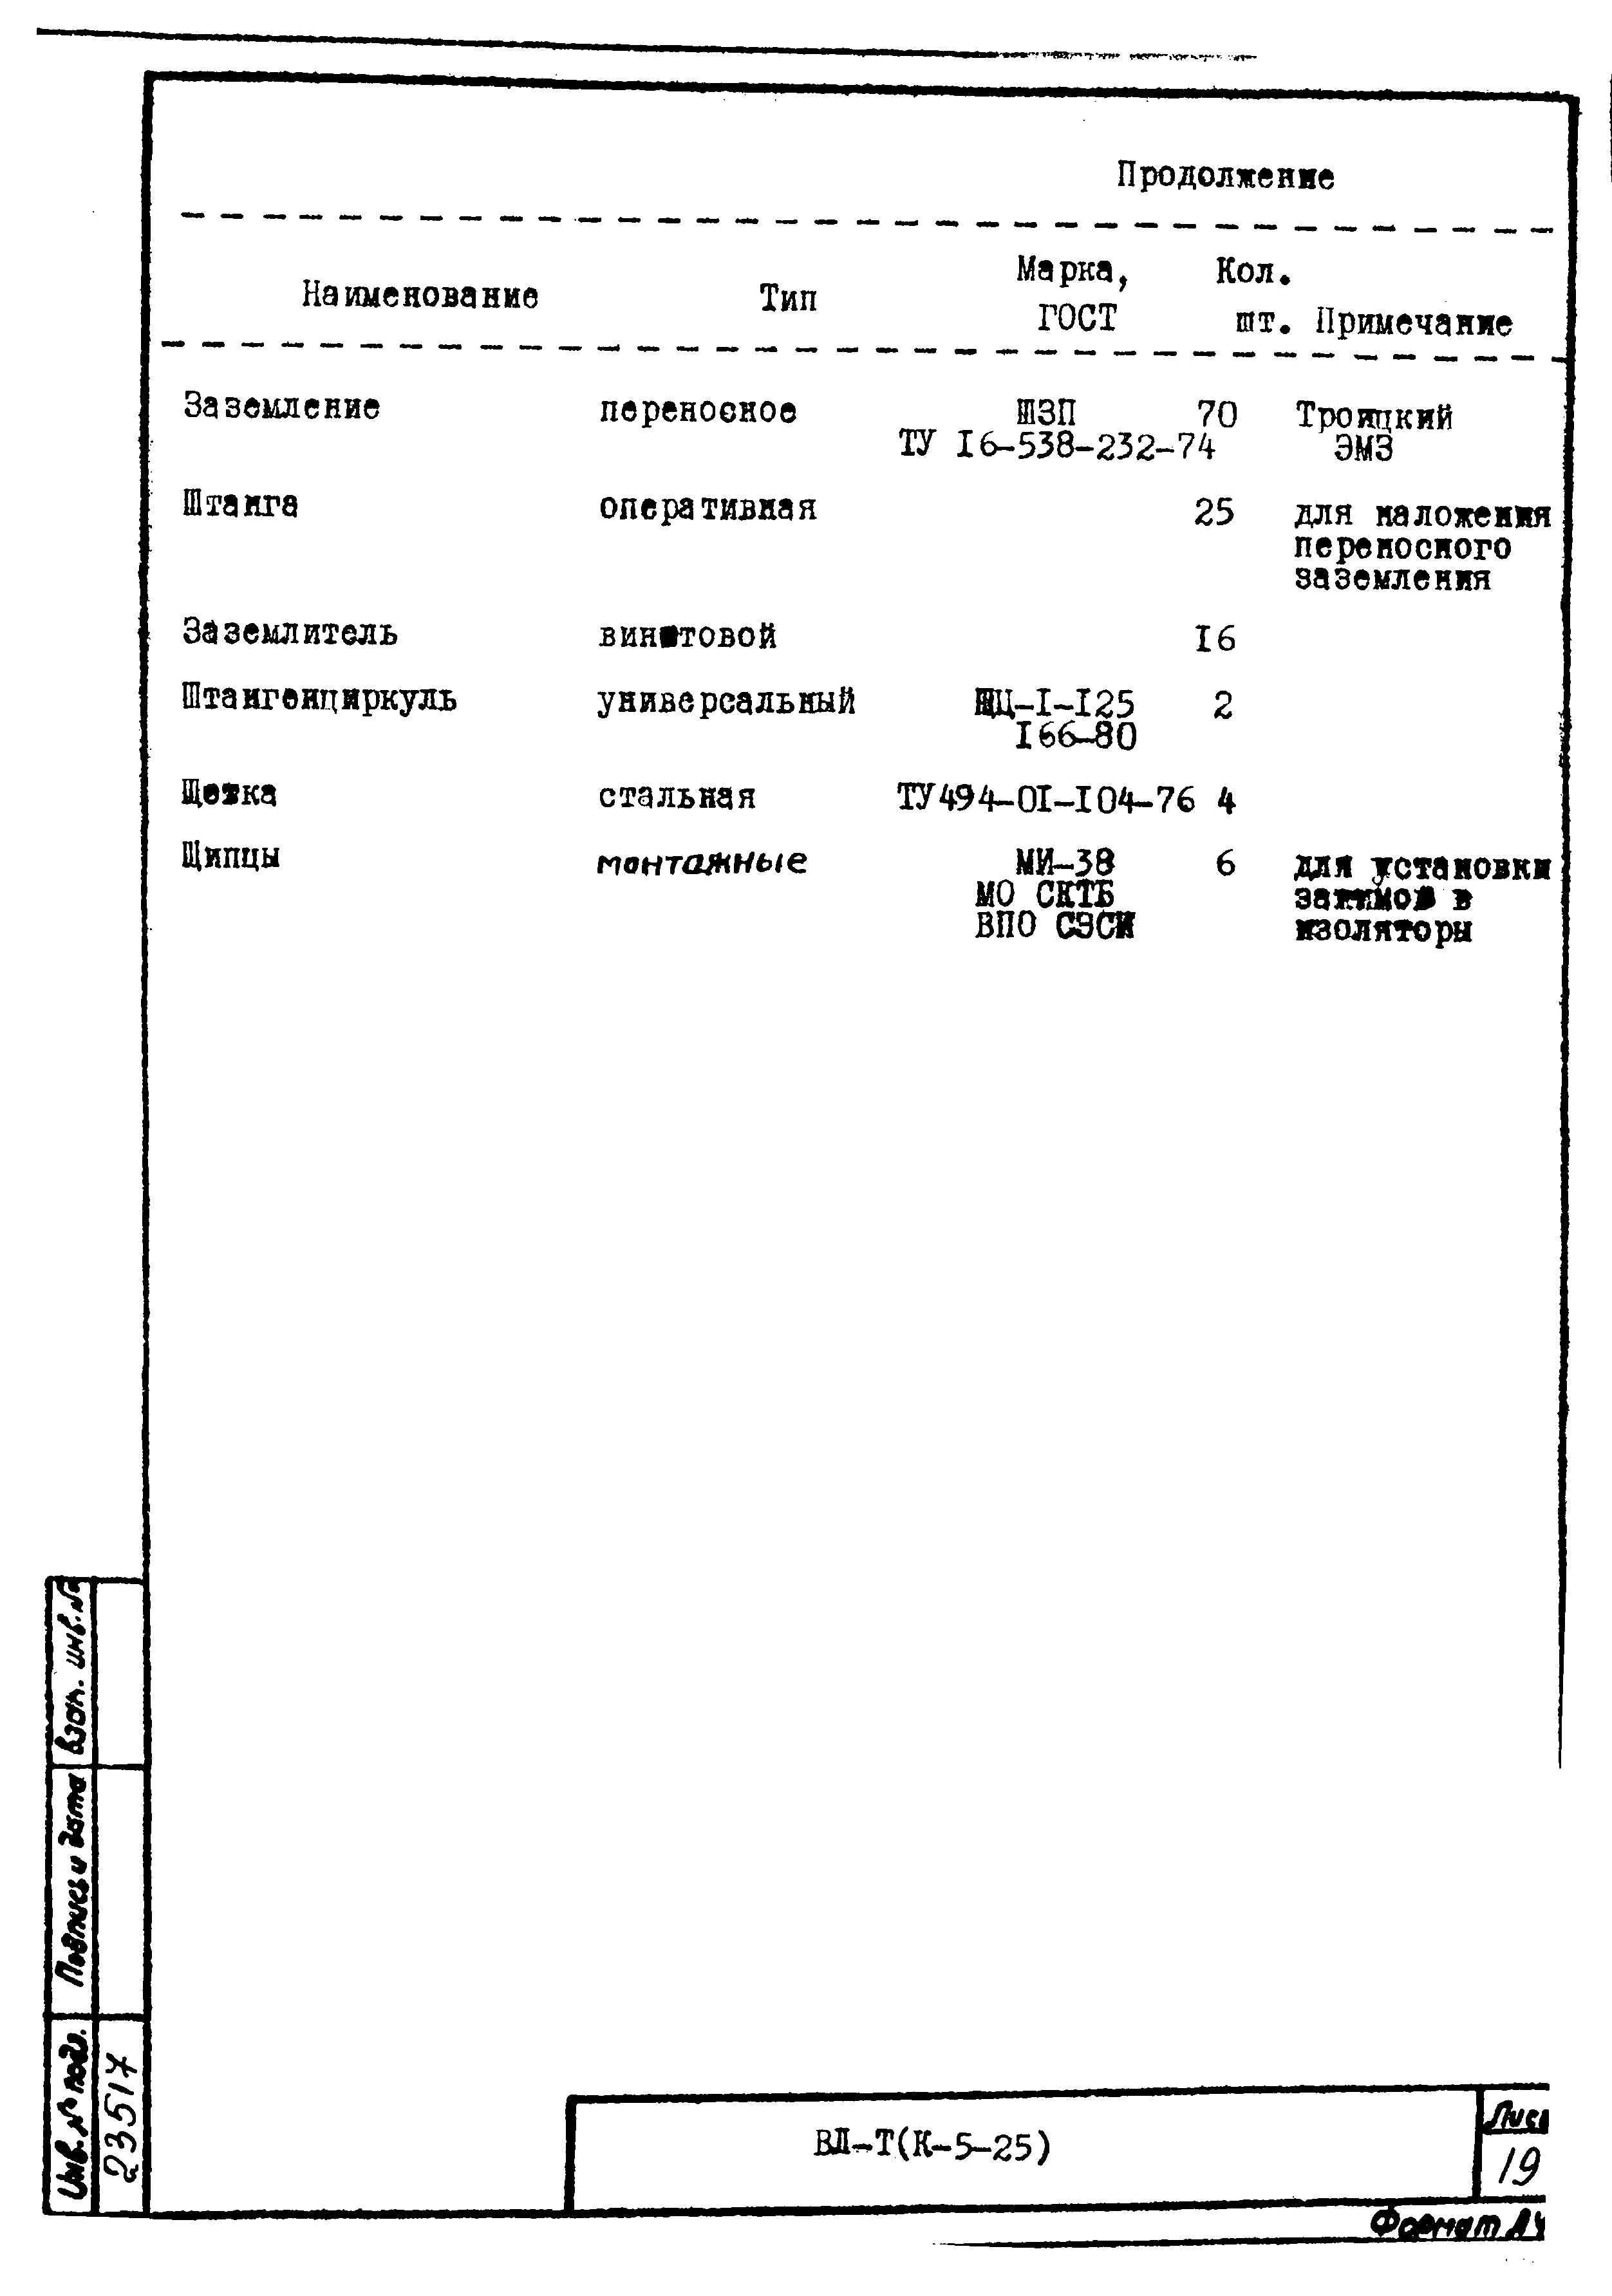 Технологическая карта К-5-25-11